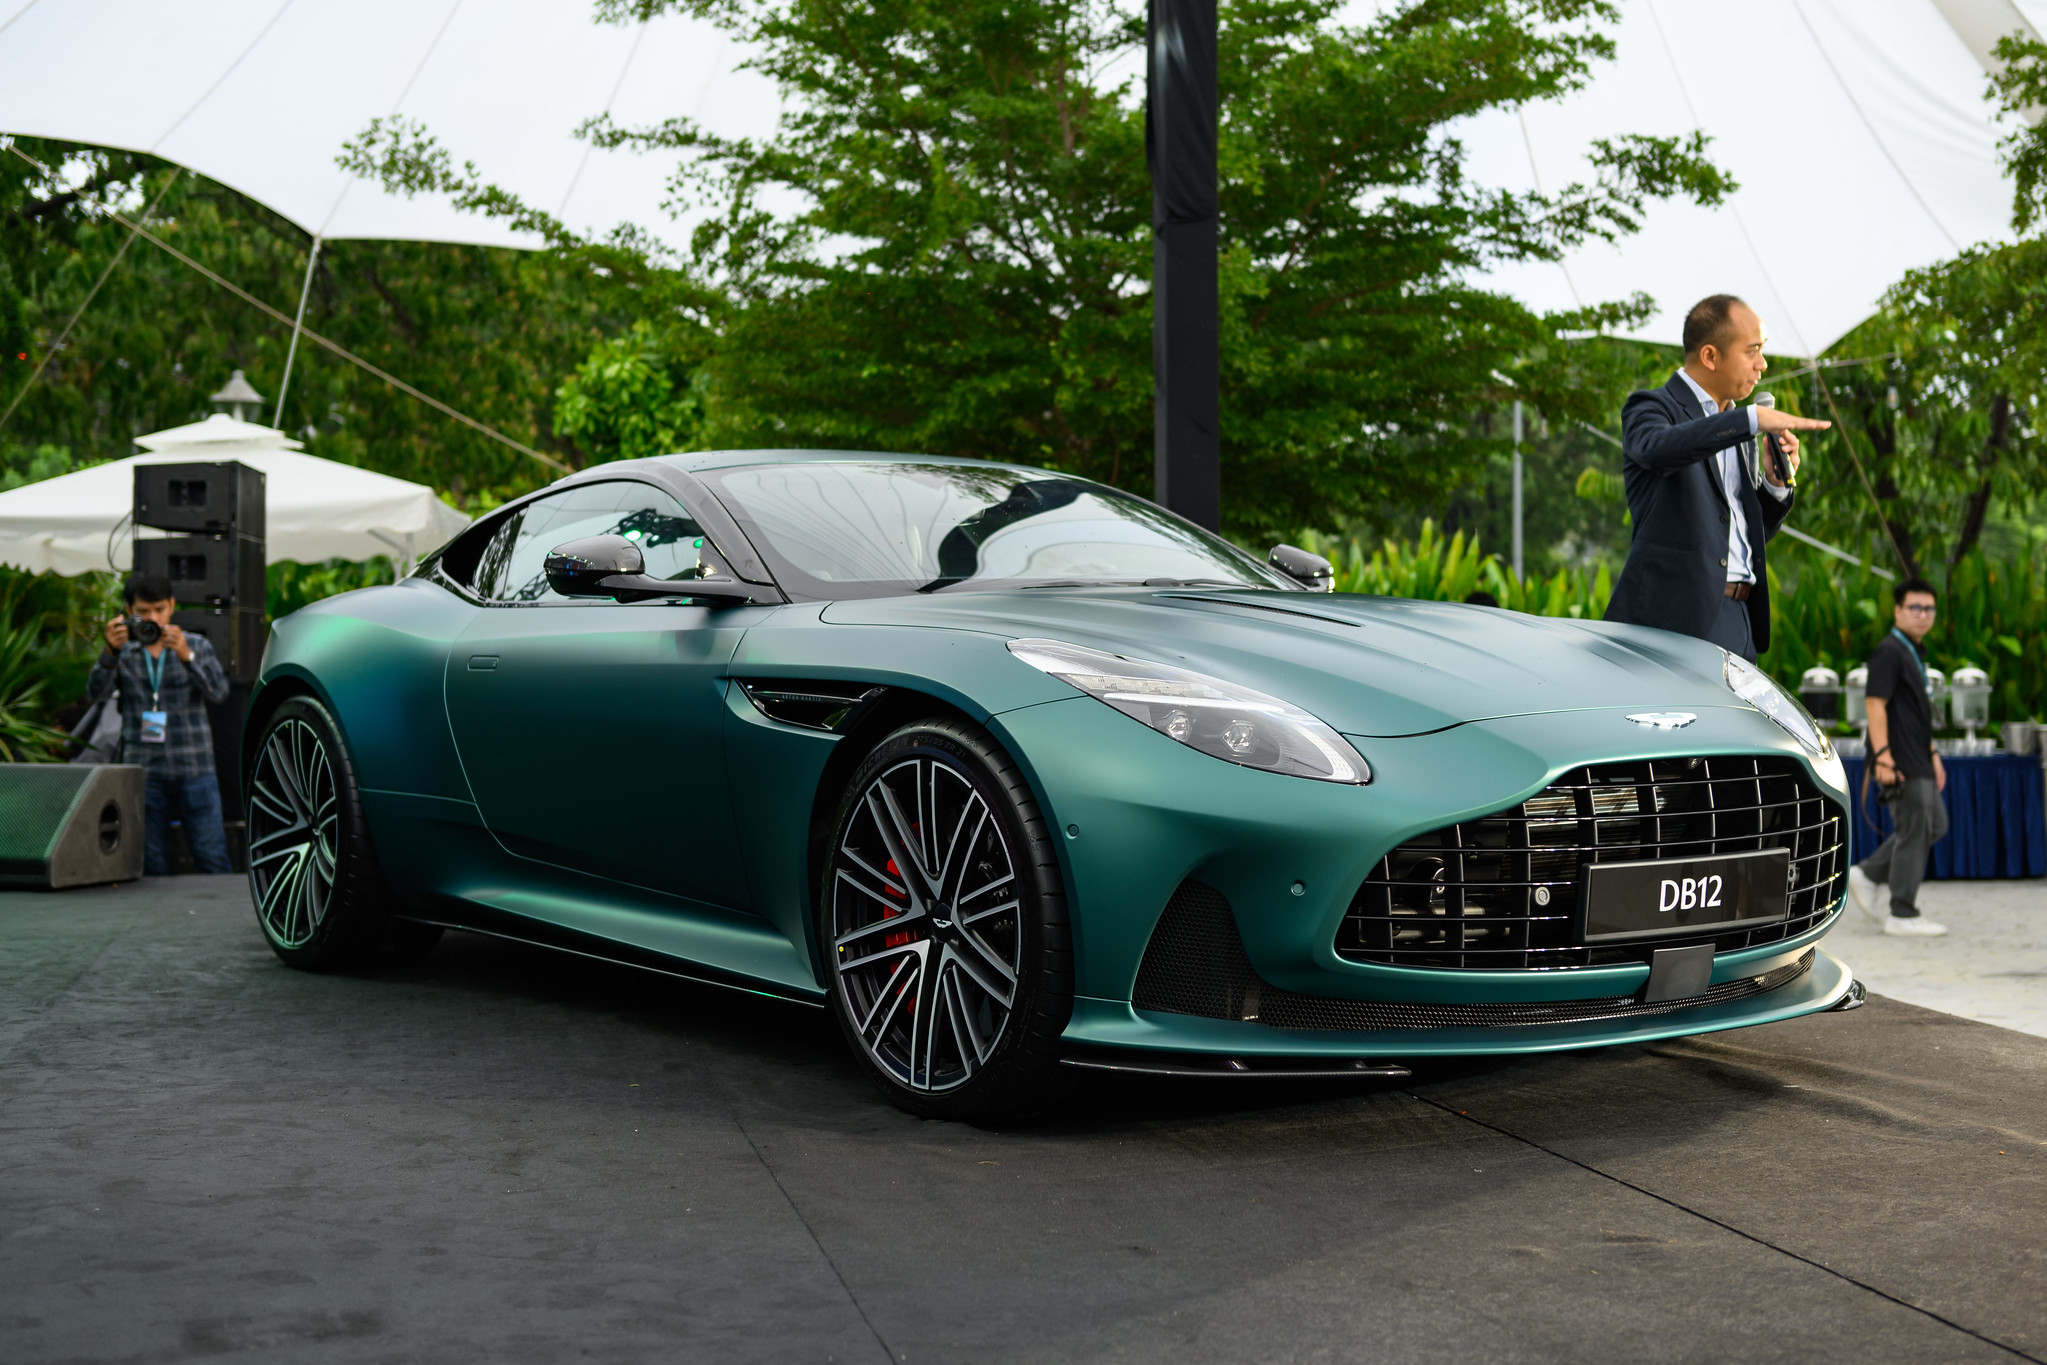 Siêu xe Aston Martin DB12 về Việt Nam, giá từ 19,5 tỉ đồng- Ảnh 1.